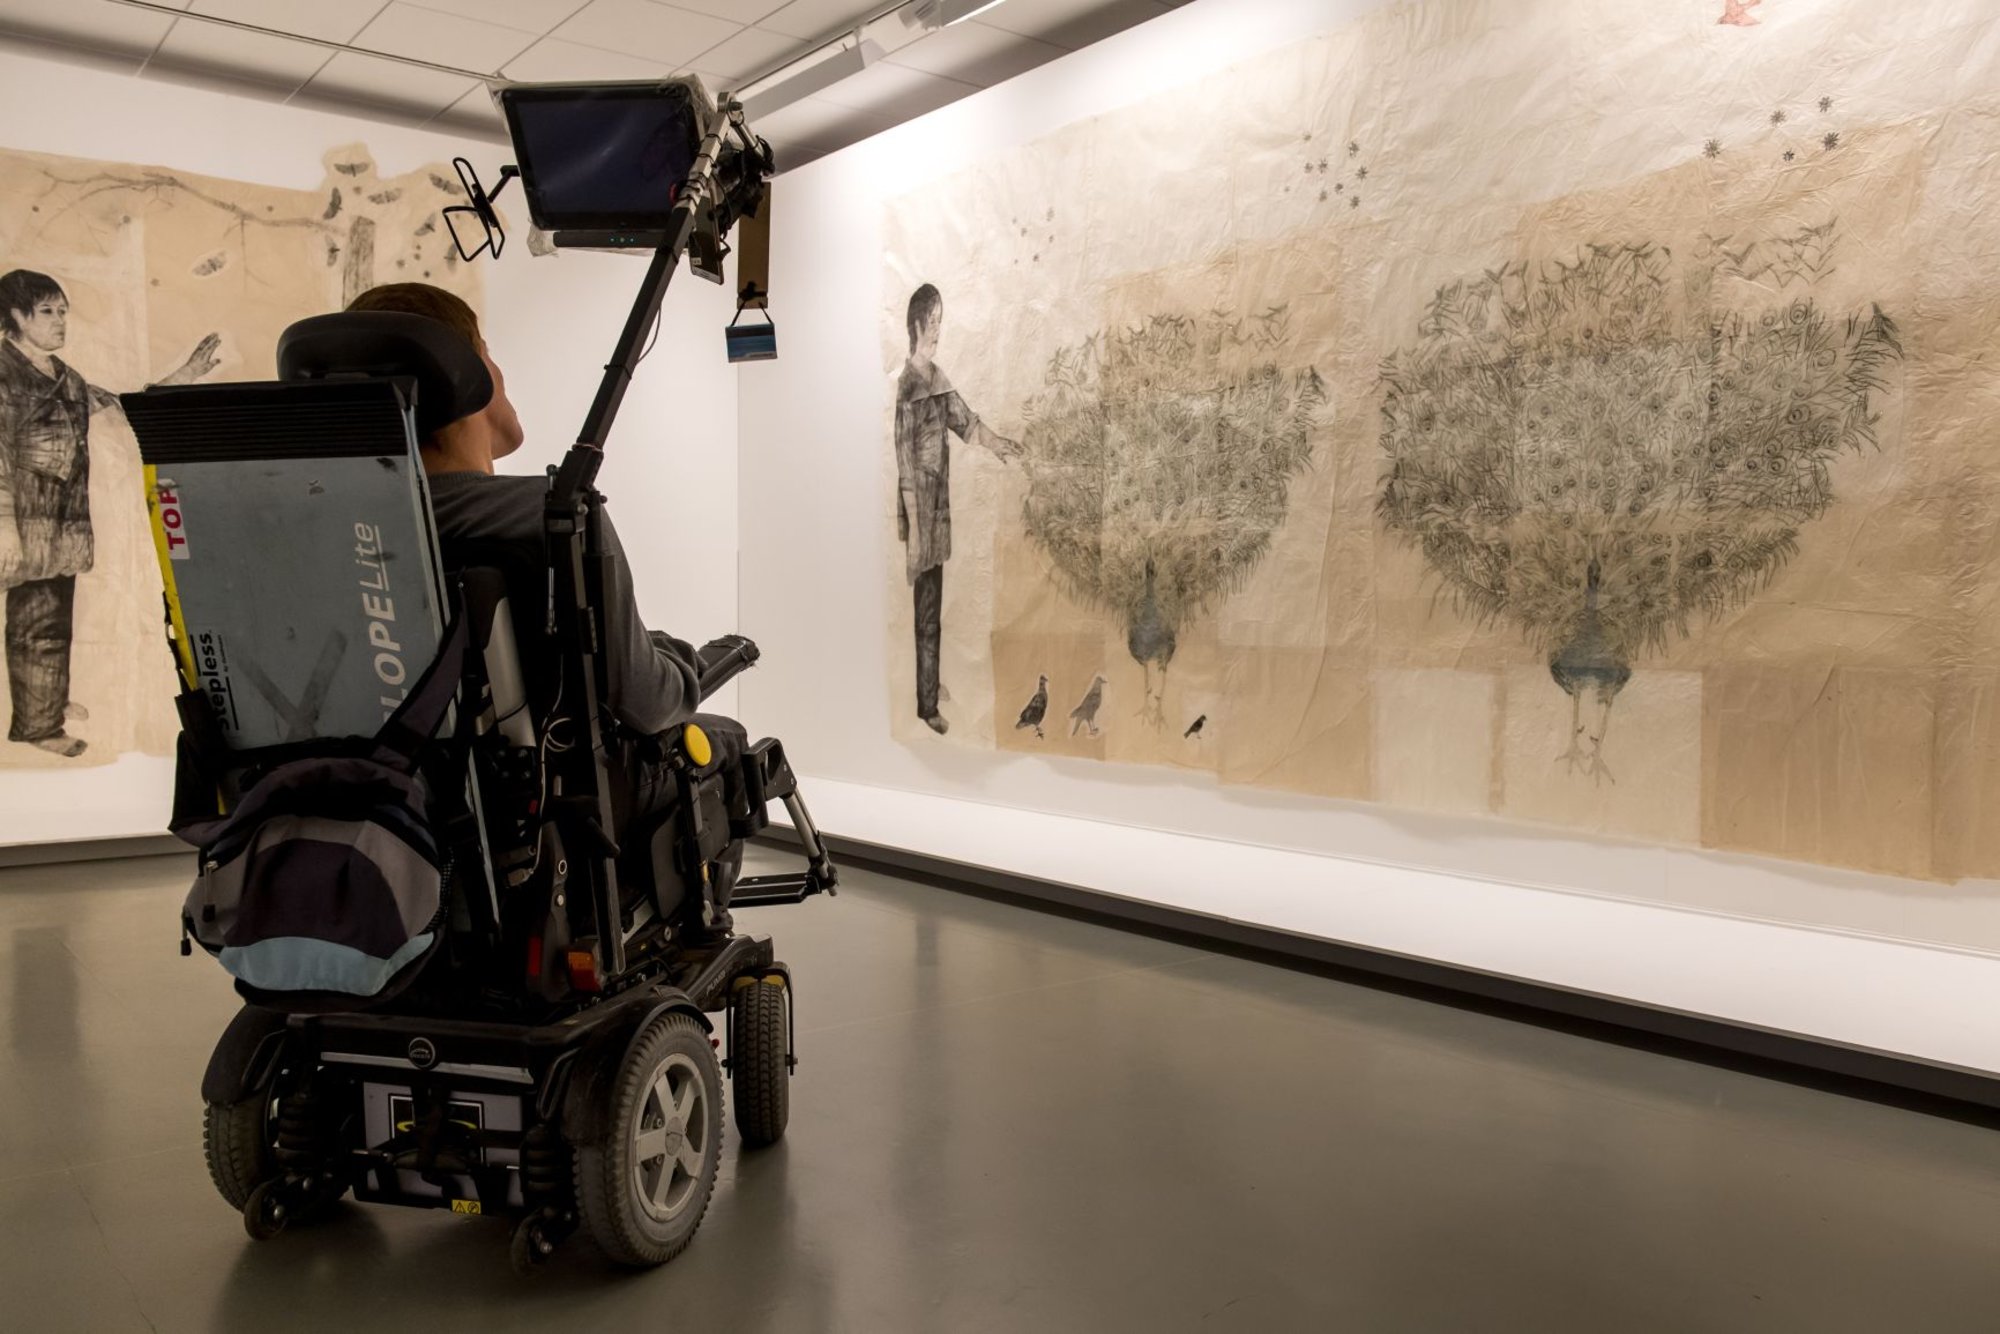 Ein junger Mann in einem elektrischen Rollstuhl sieht sich sepiafarbene, großformatige Gemälde in einer Galerie an.
Bild: Danny Gys | Reporters Reporters | GYS PUBLICATION